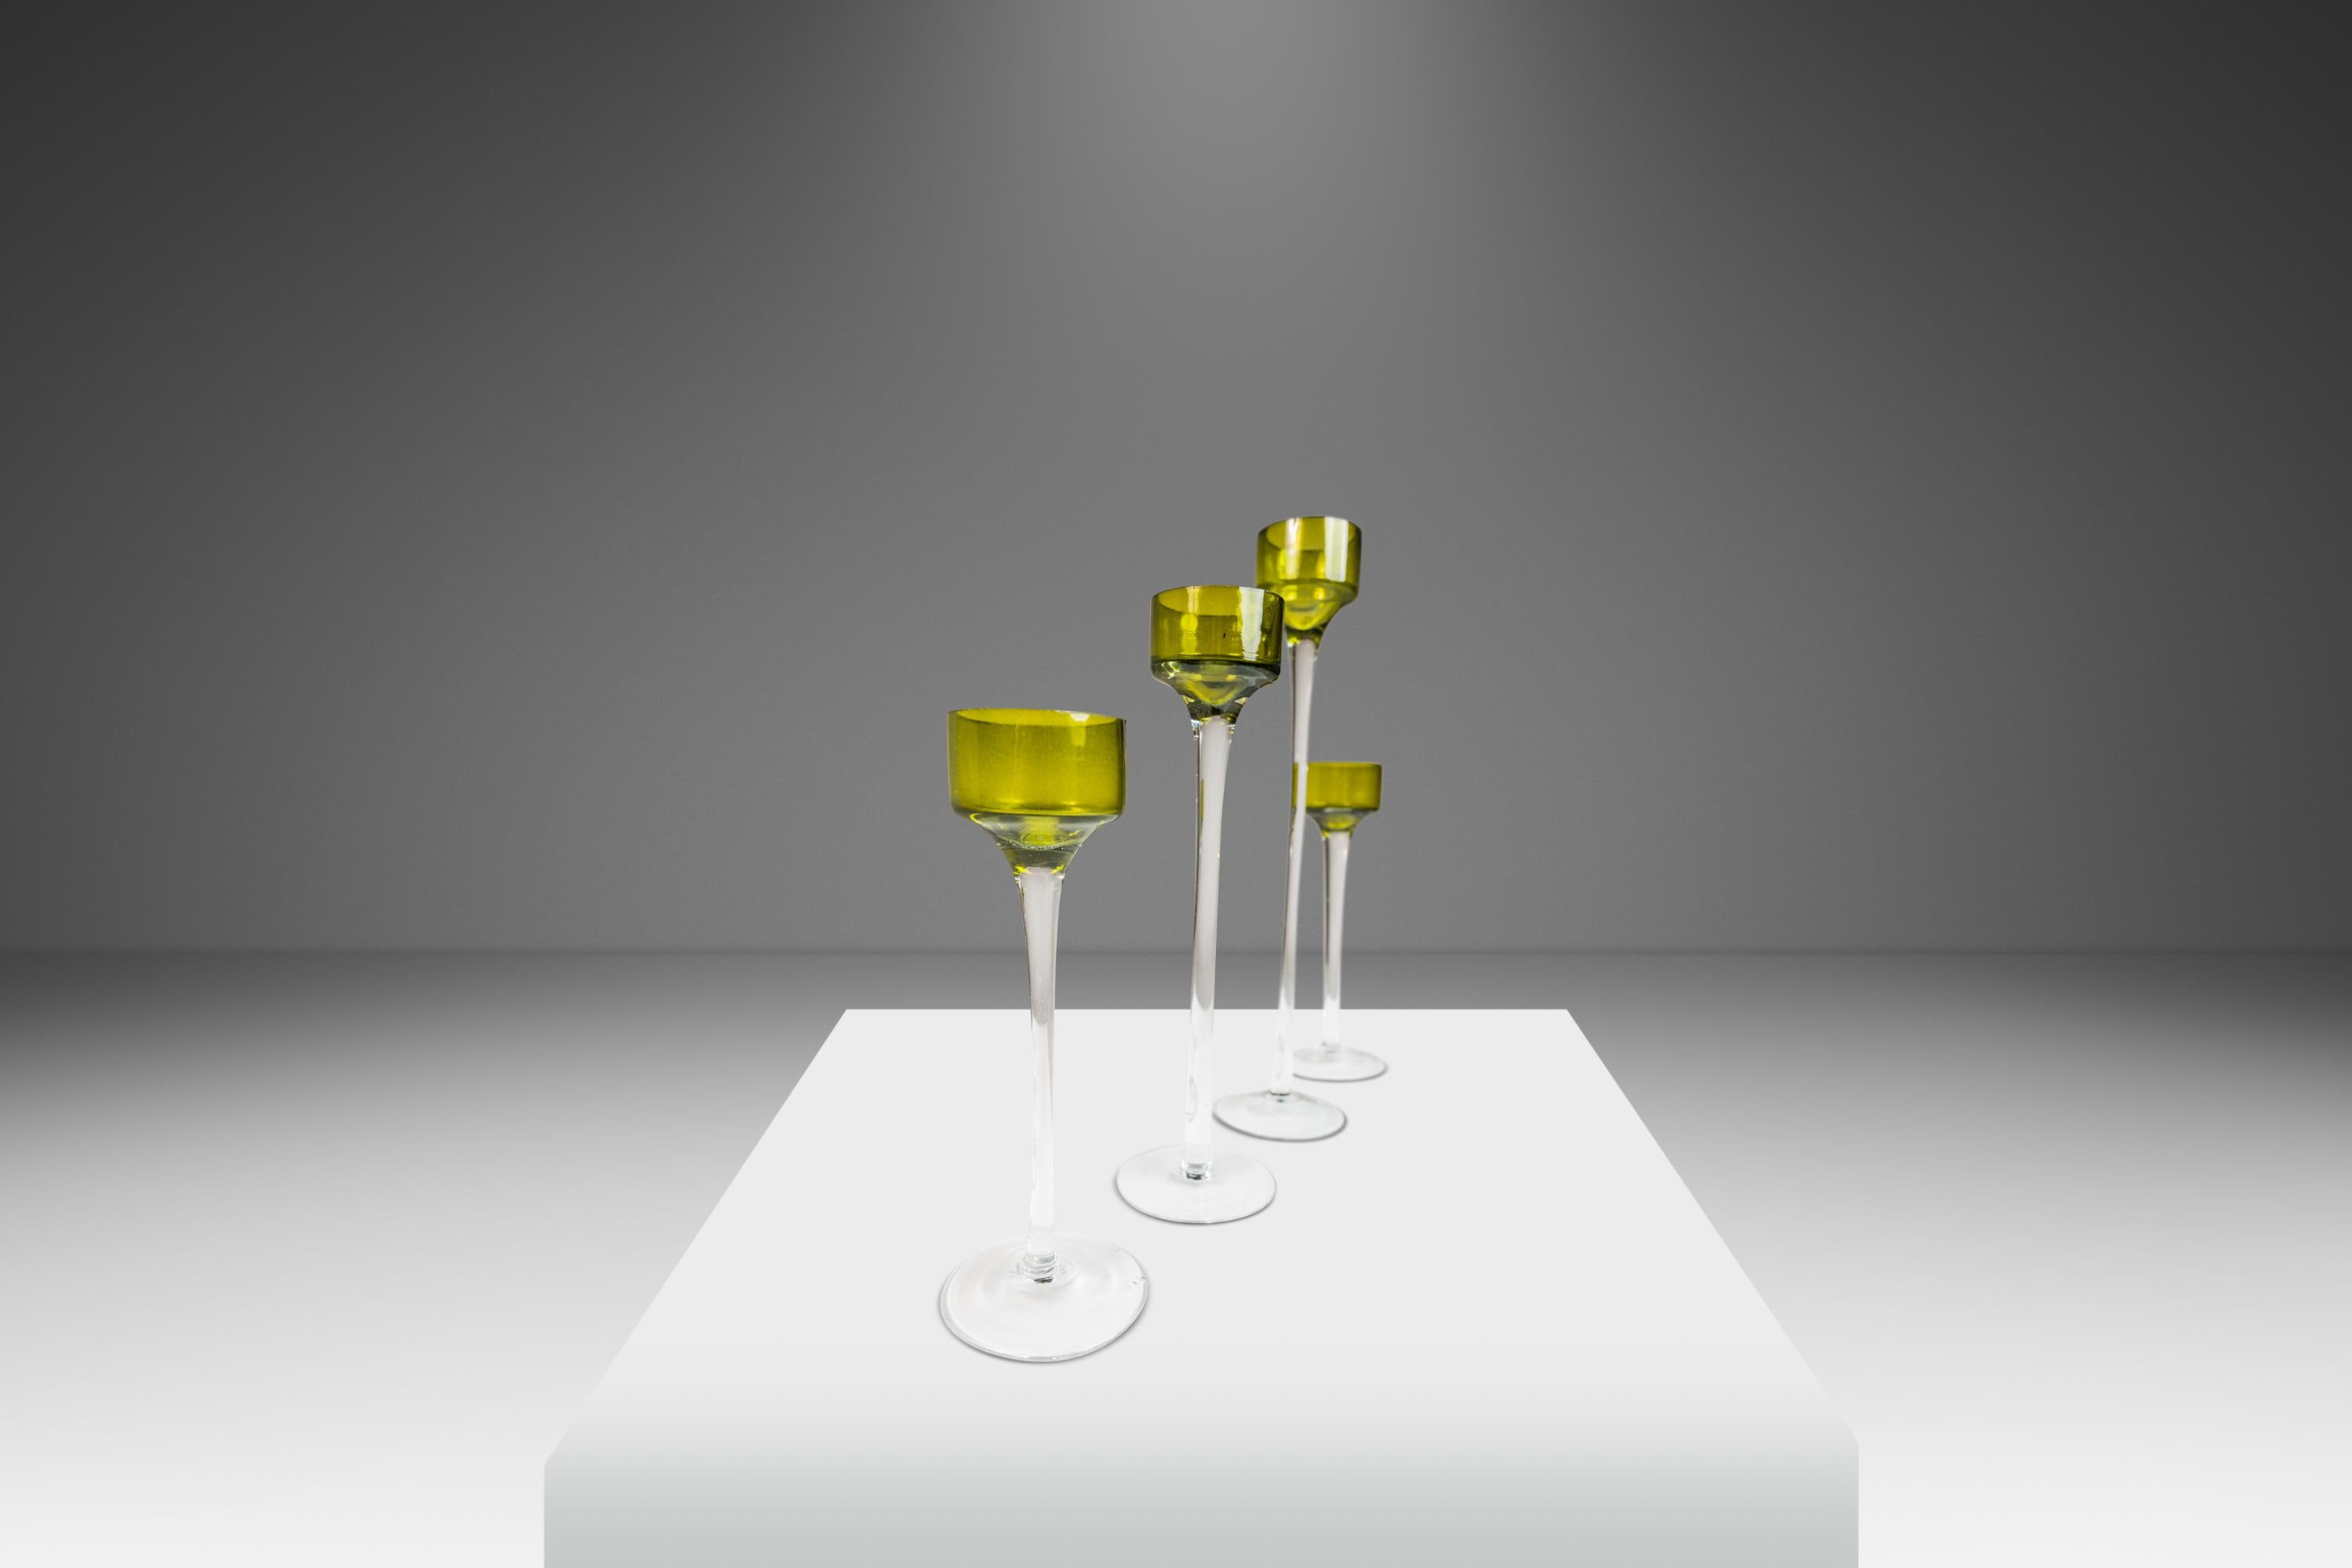  Wir präsentieren ein kunstvoll gefertigtes Set aus vier mundgeblasenen Glaskerzenhaltern der italienischen Moderne. Wie bei Schneeflocken gleicht keine der anderen und jede ist in Größe und Form leicht unterschiedlich. Die eleganten,